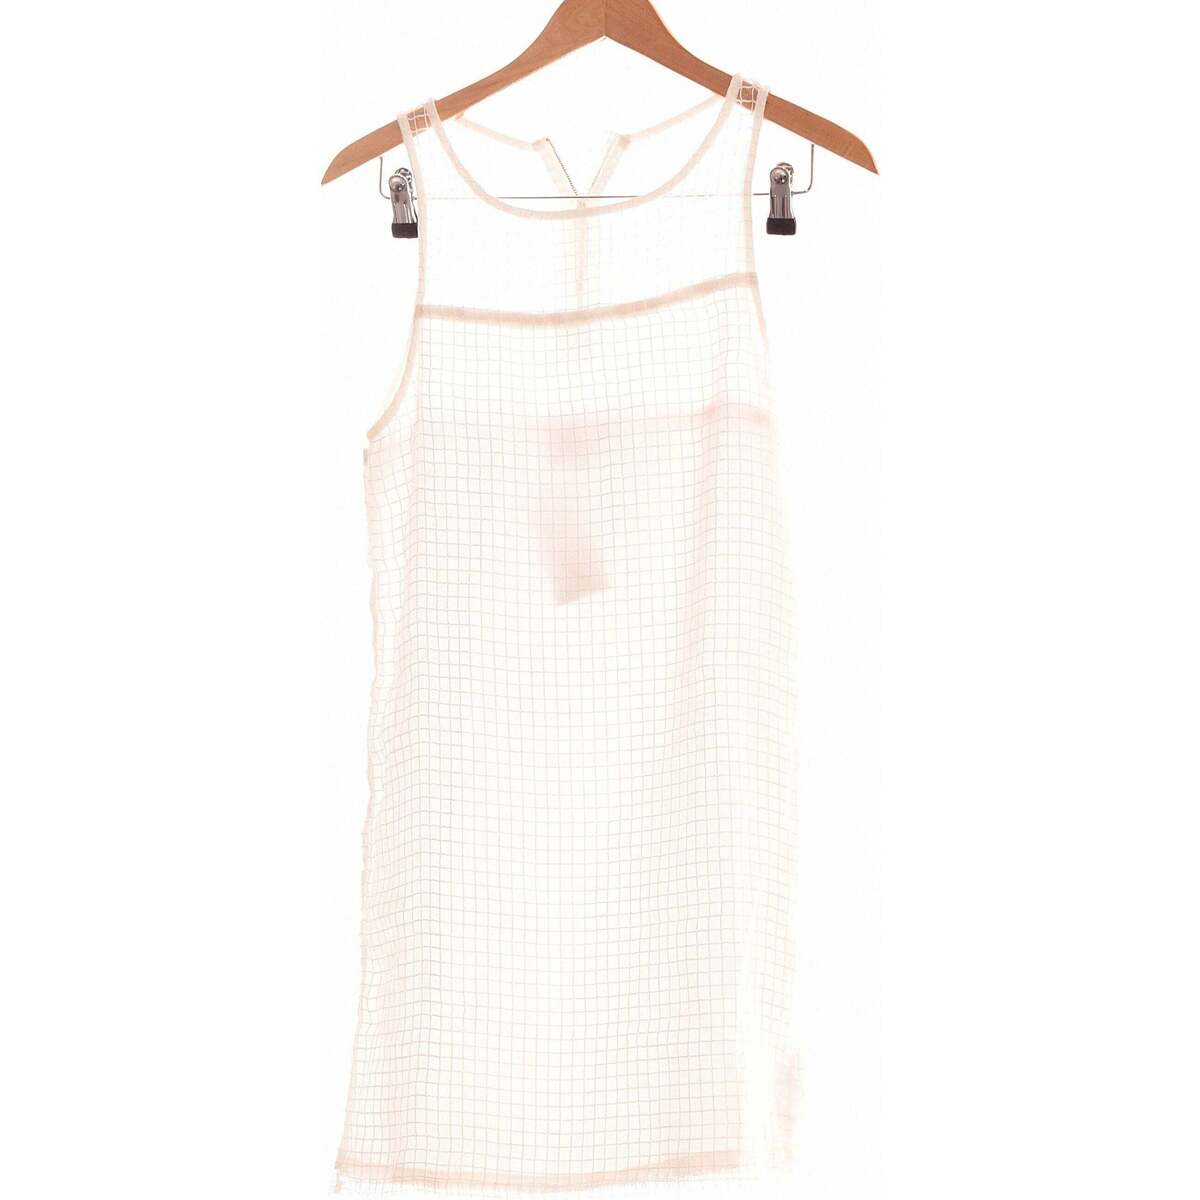 Vêtements Femme Hoka one one robe courte  36 - T1 - S Blanc Blanc